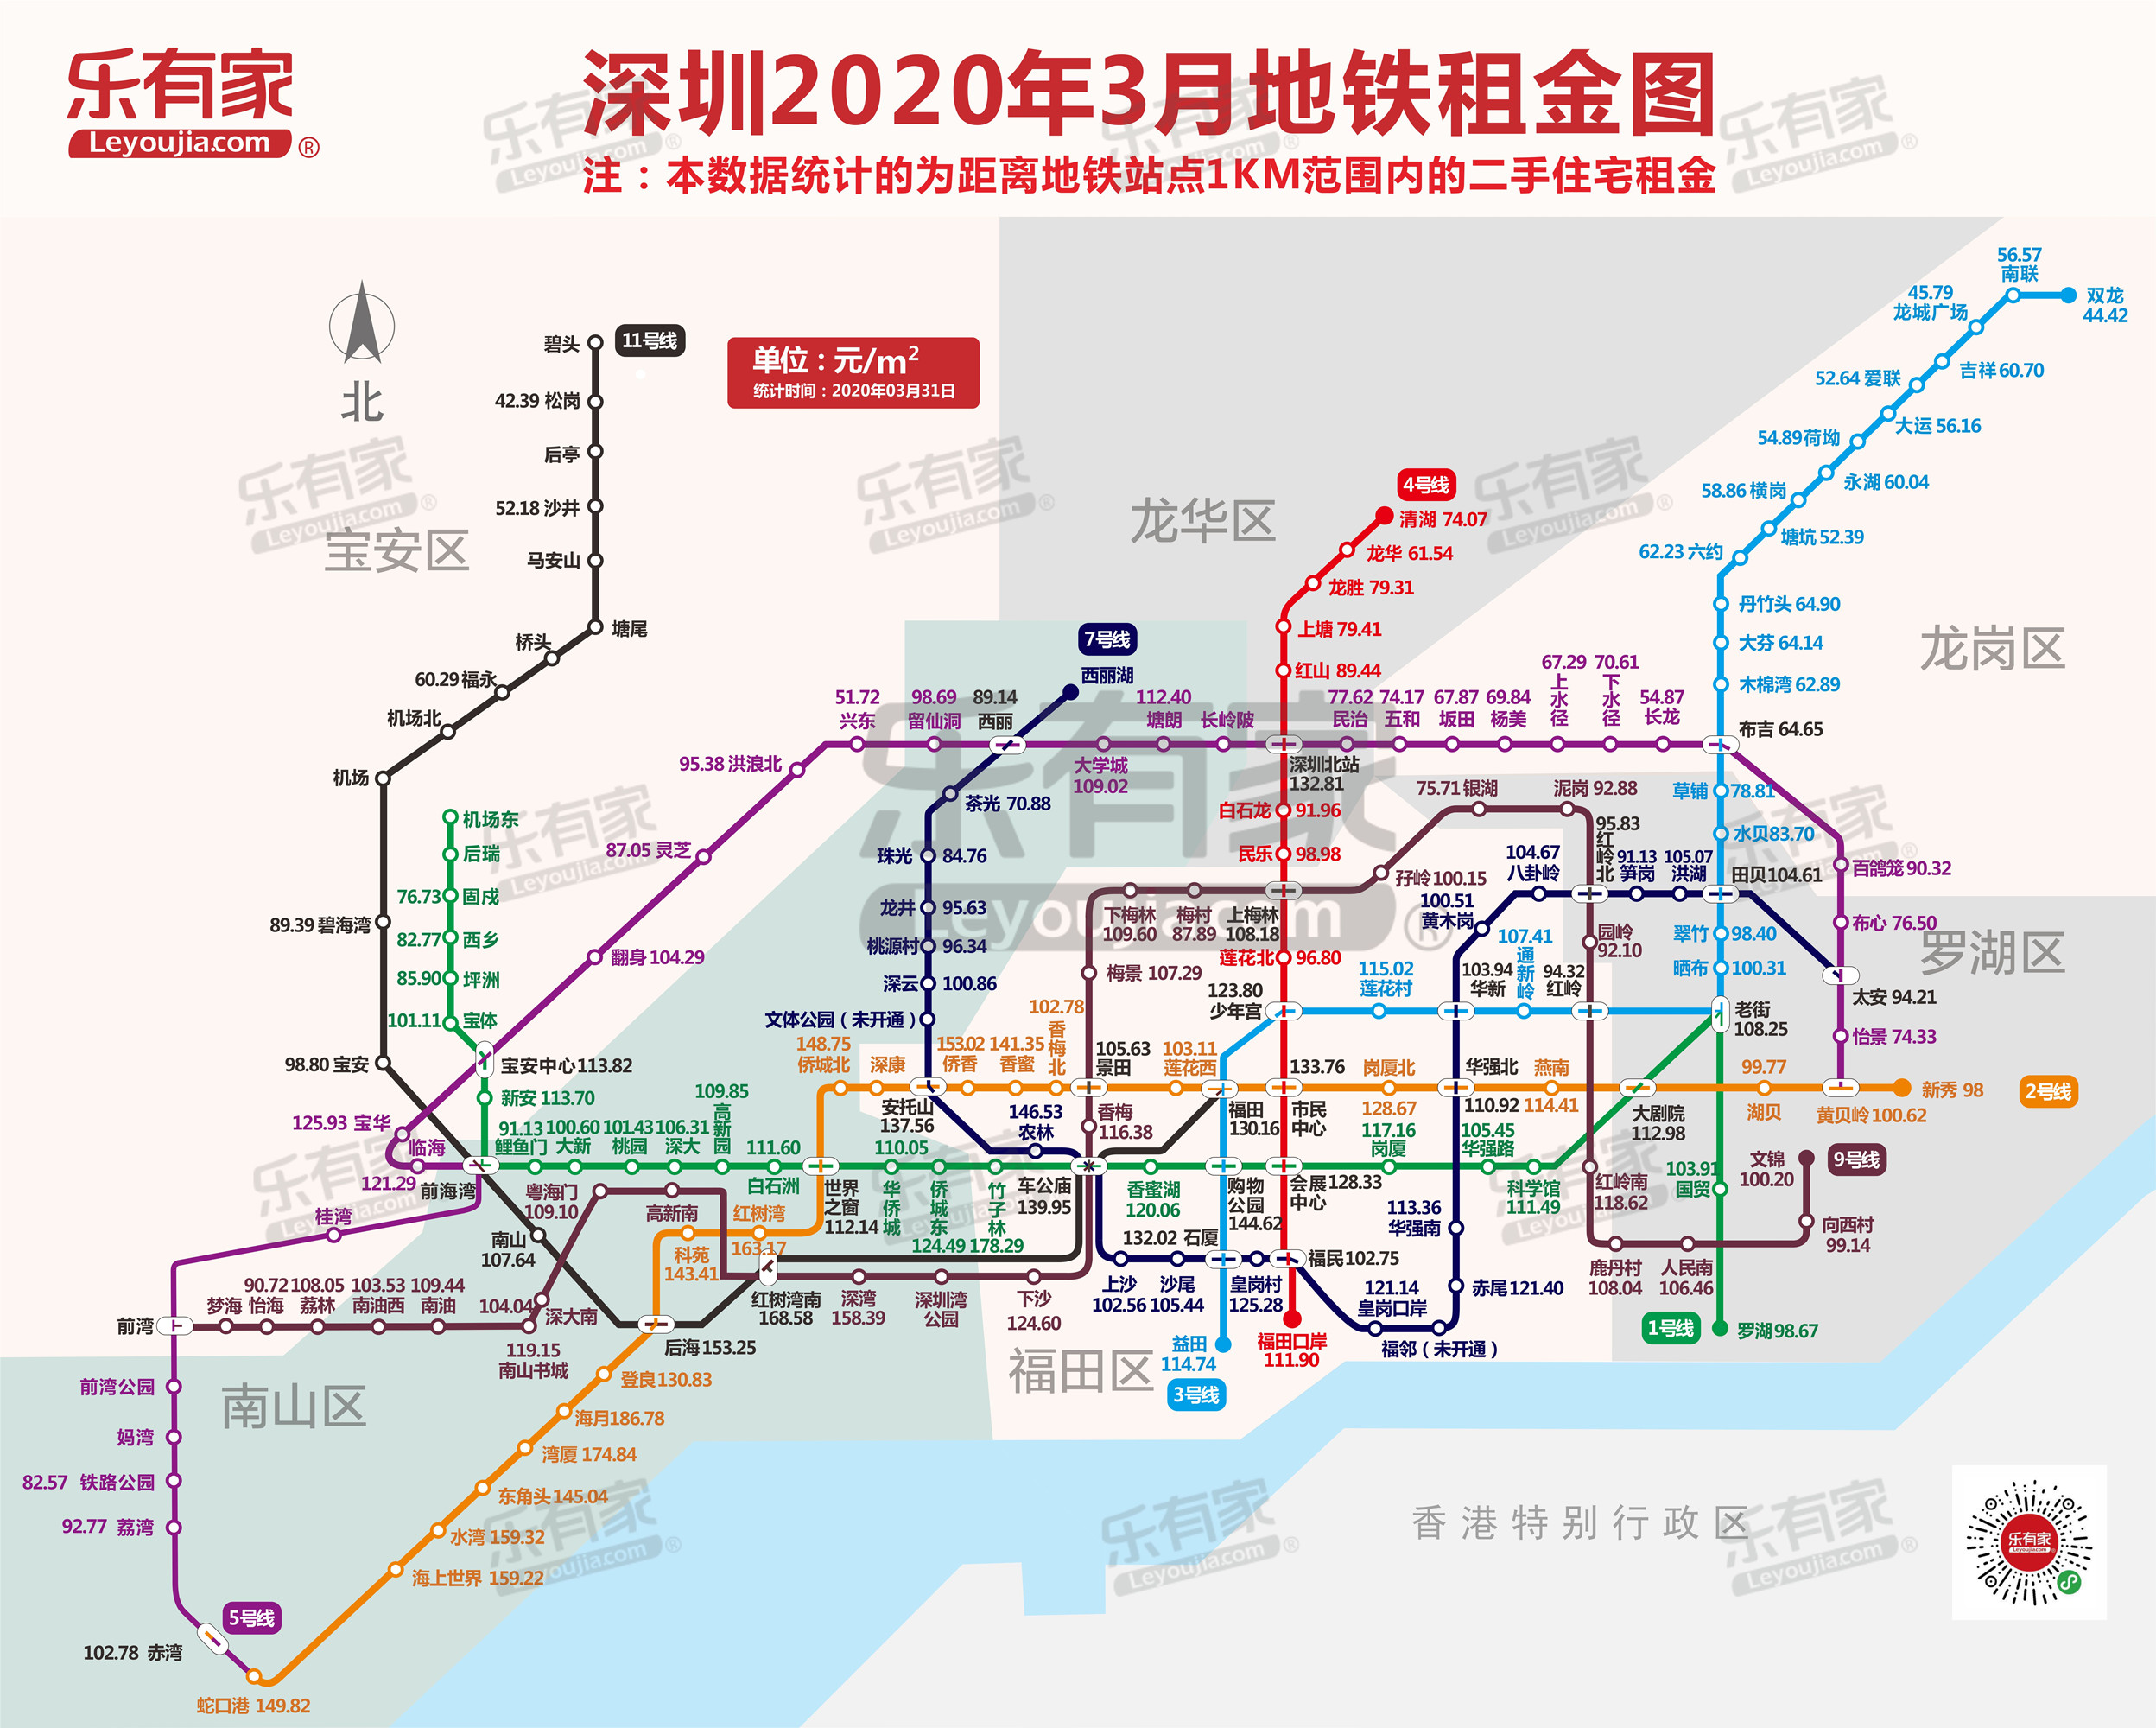 如何跟着地铁去买房深圳217个地铁站点房价大数据告诉你